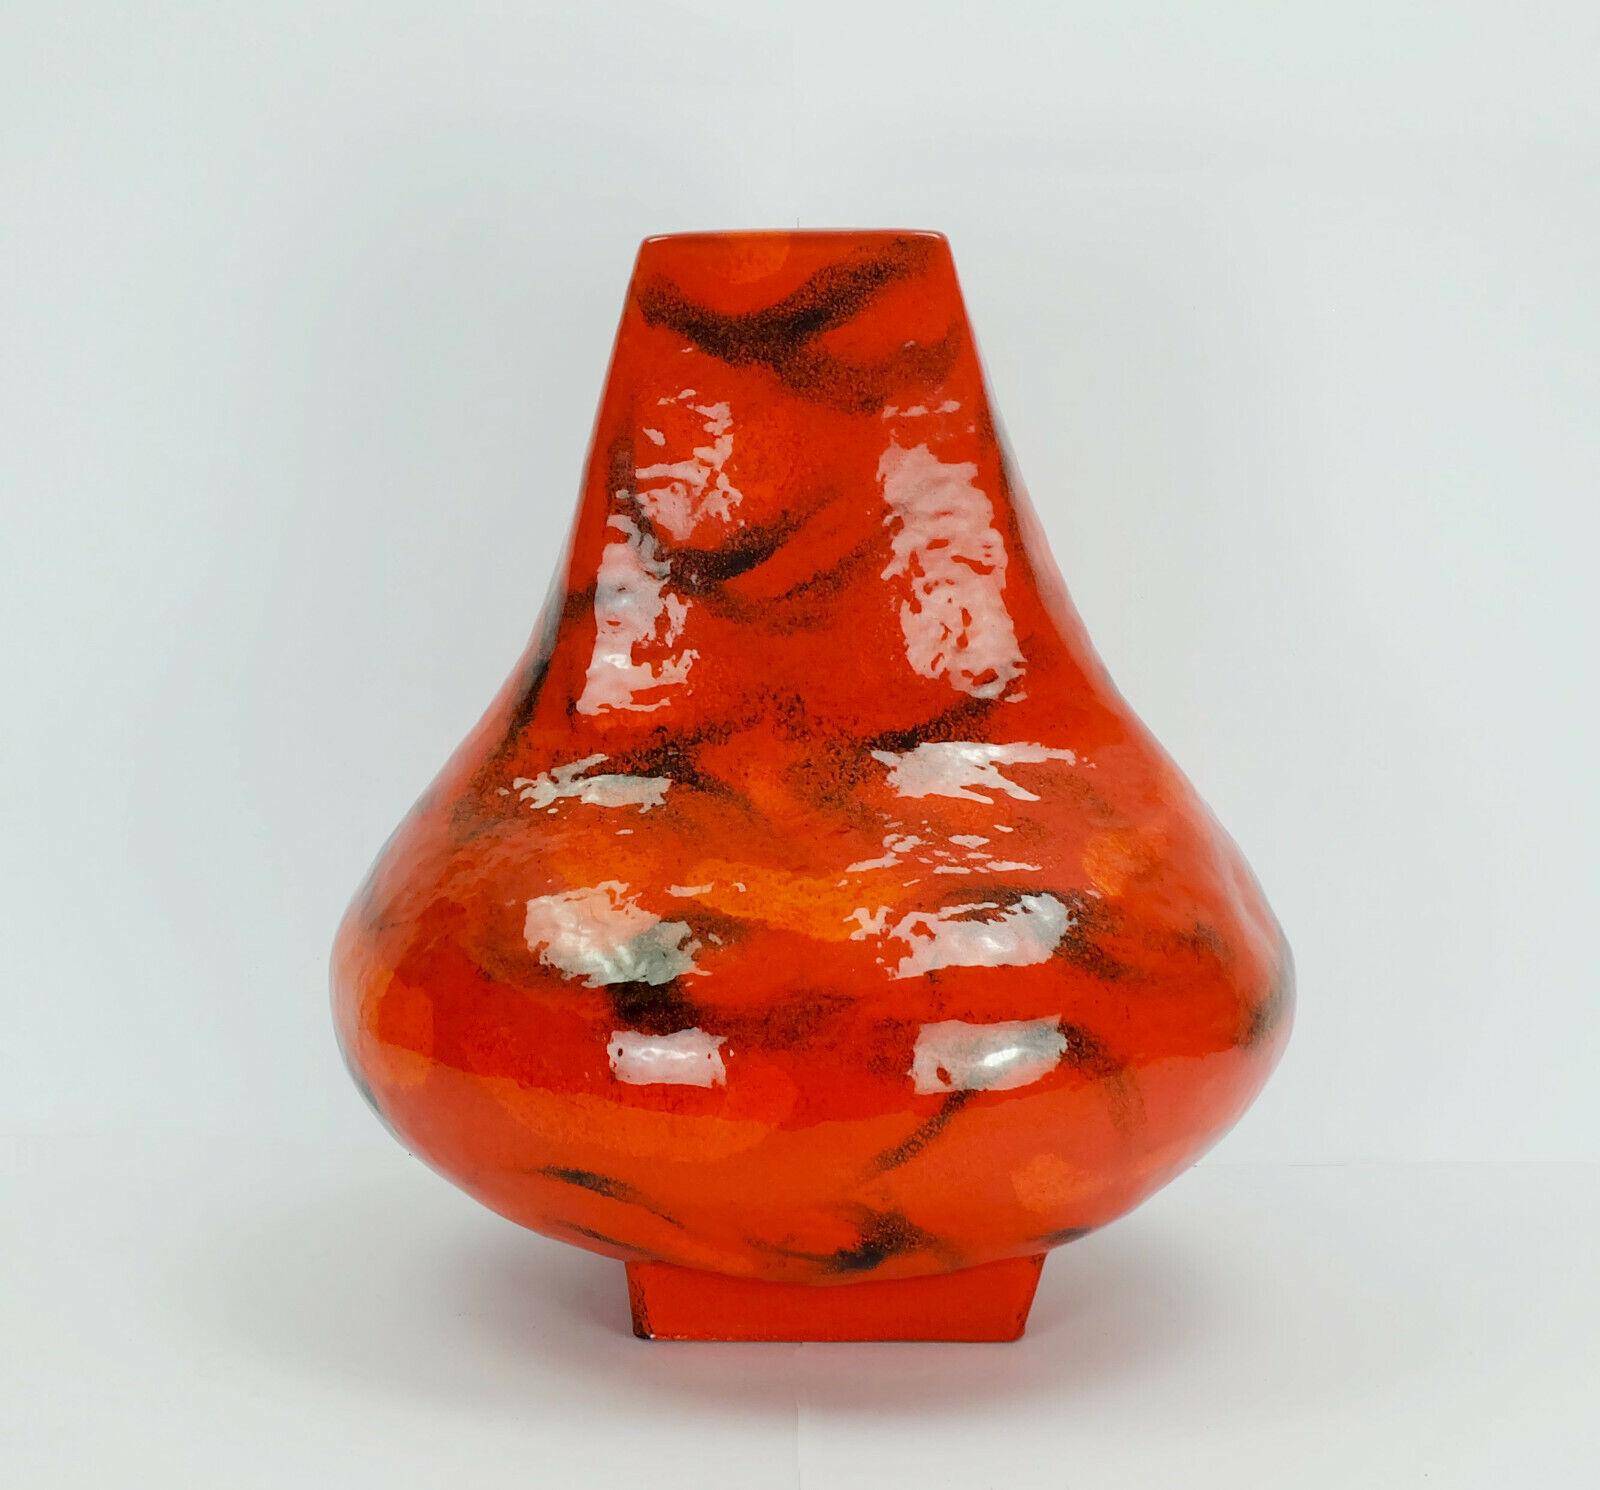 Sehr seltene und große Bodenvase aus Keramik aus den 1970er Jahren. Entworfen von Lilo Pragher für Karlsruher Majolika. Modell 7573. Intensive rote Glasur mit abstraktem Muster in Orange und Schwarz.

Höhe 19 3/4